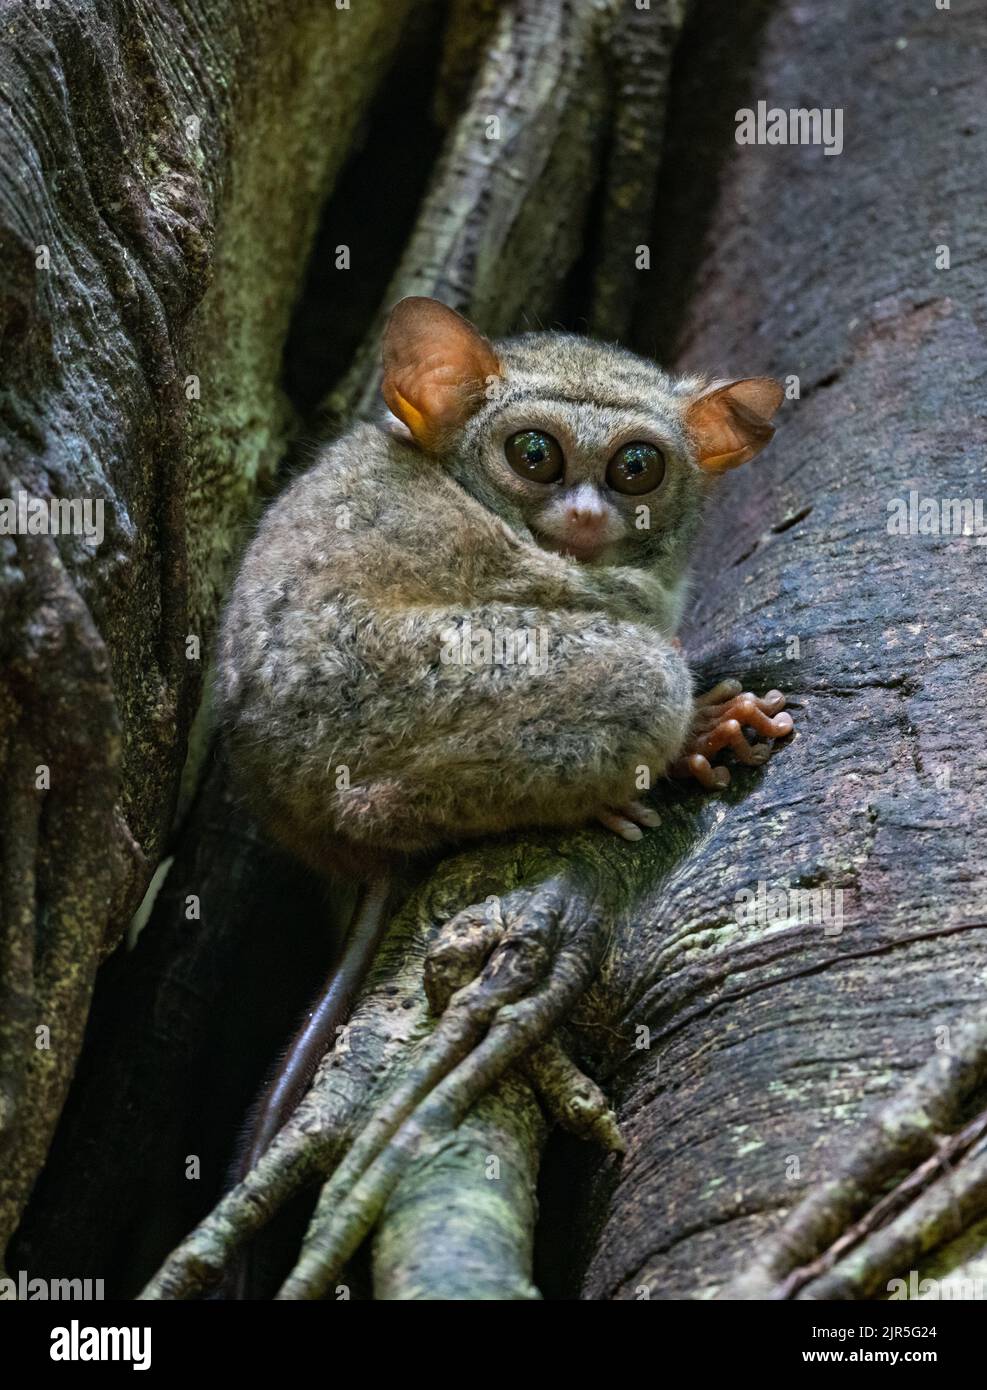 Un petit primate Spectral Tarsier (spectre Tarsius) assis sur un tronc d'arbre dans la nature. Parc national de Tangkoko, Sulawesi, Indonésie. Banque D'Images